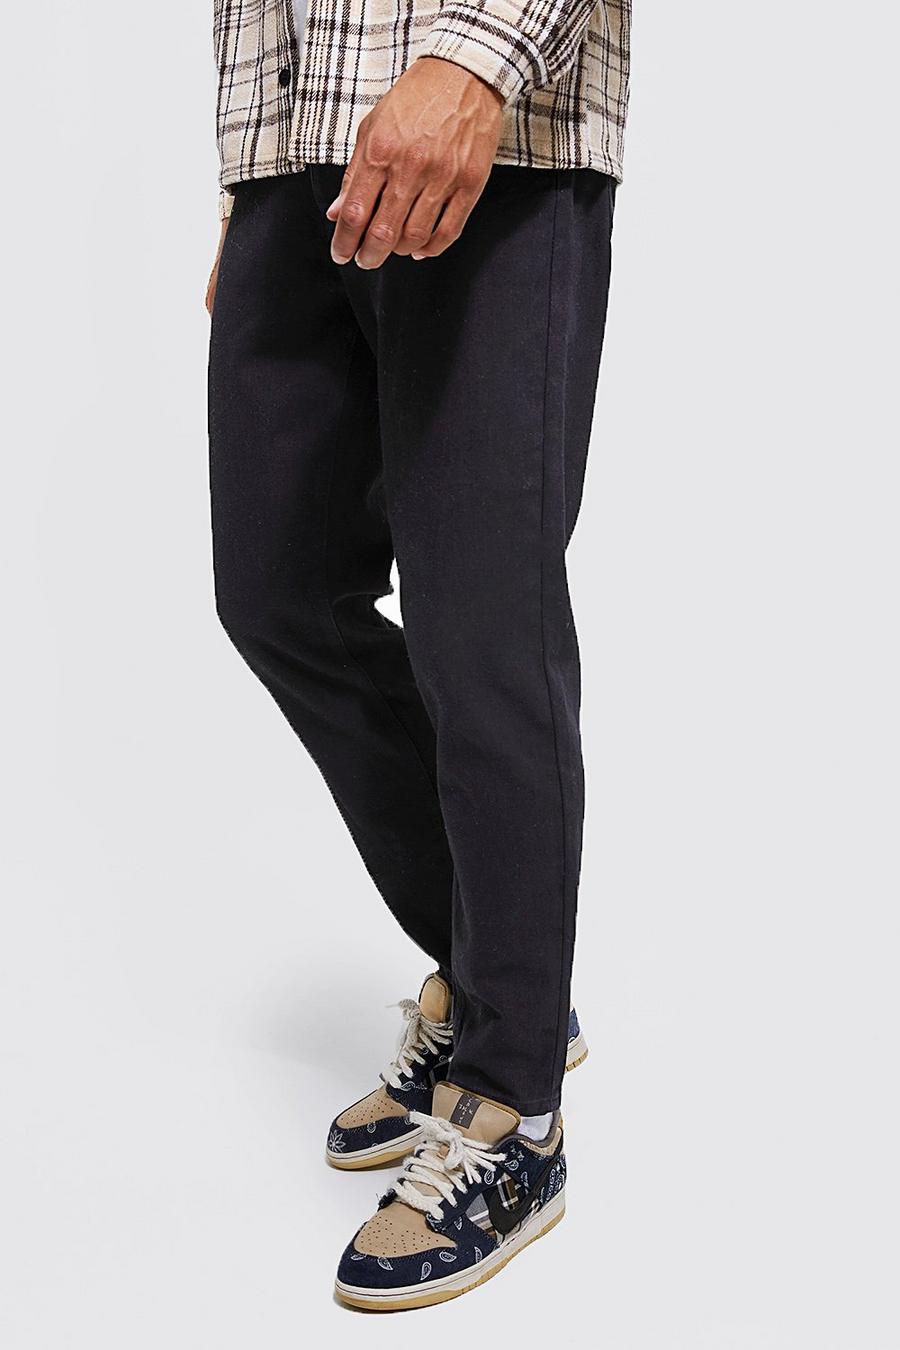 שחור אמיתי ג'ינס מבד קשיח בגזרת קרסול צרה, לגברים גבוהים